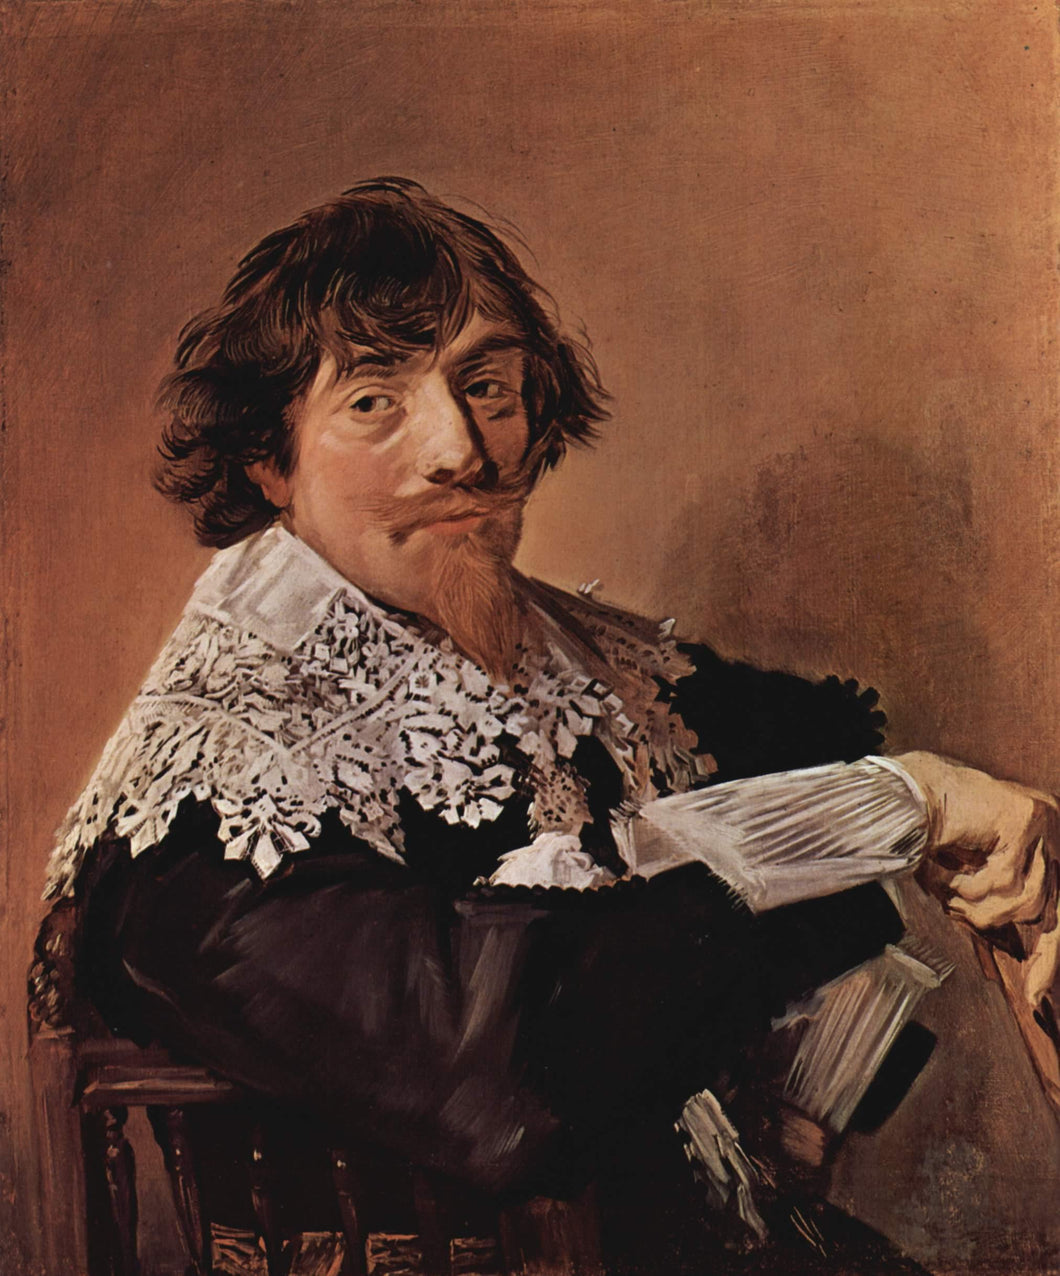 Retrato de um homem, possivelmente Nicolaes Hasselaer